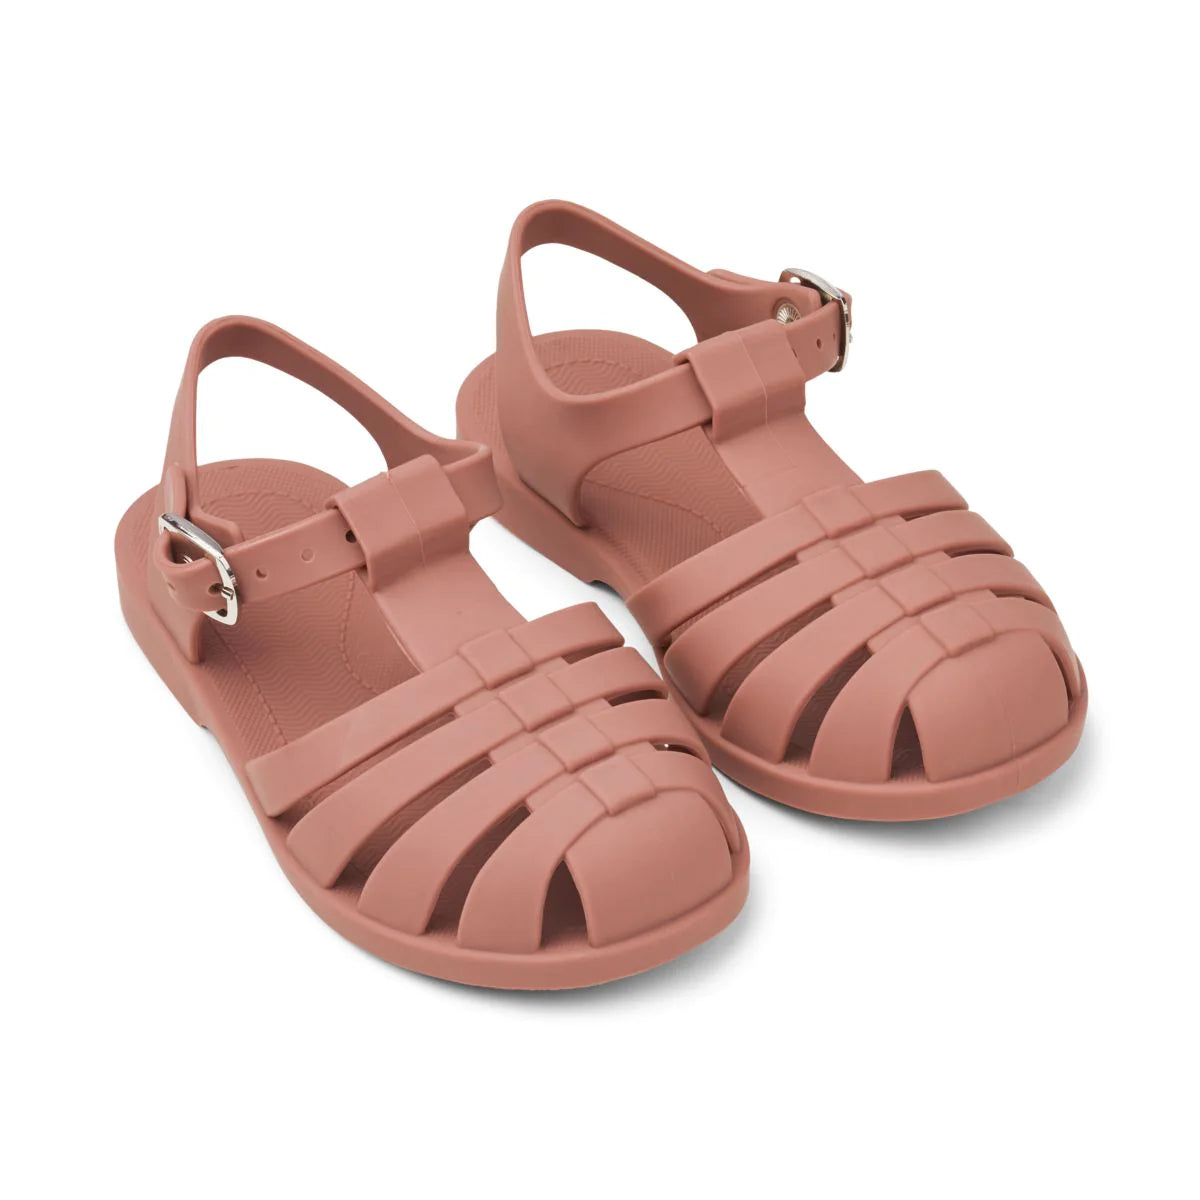 An image of Buy Liewood Bre Beach Sandals - Summer Kids Sandals Dark Rose New / 27